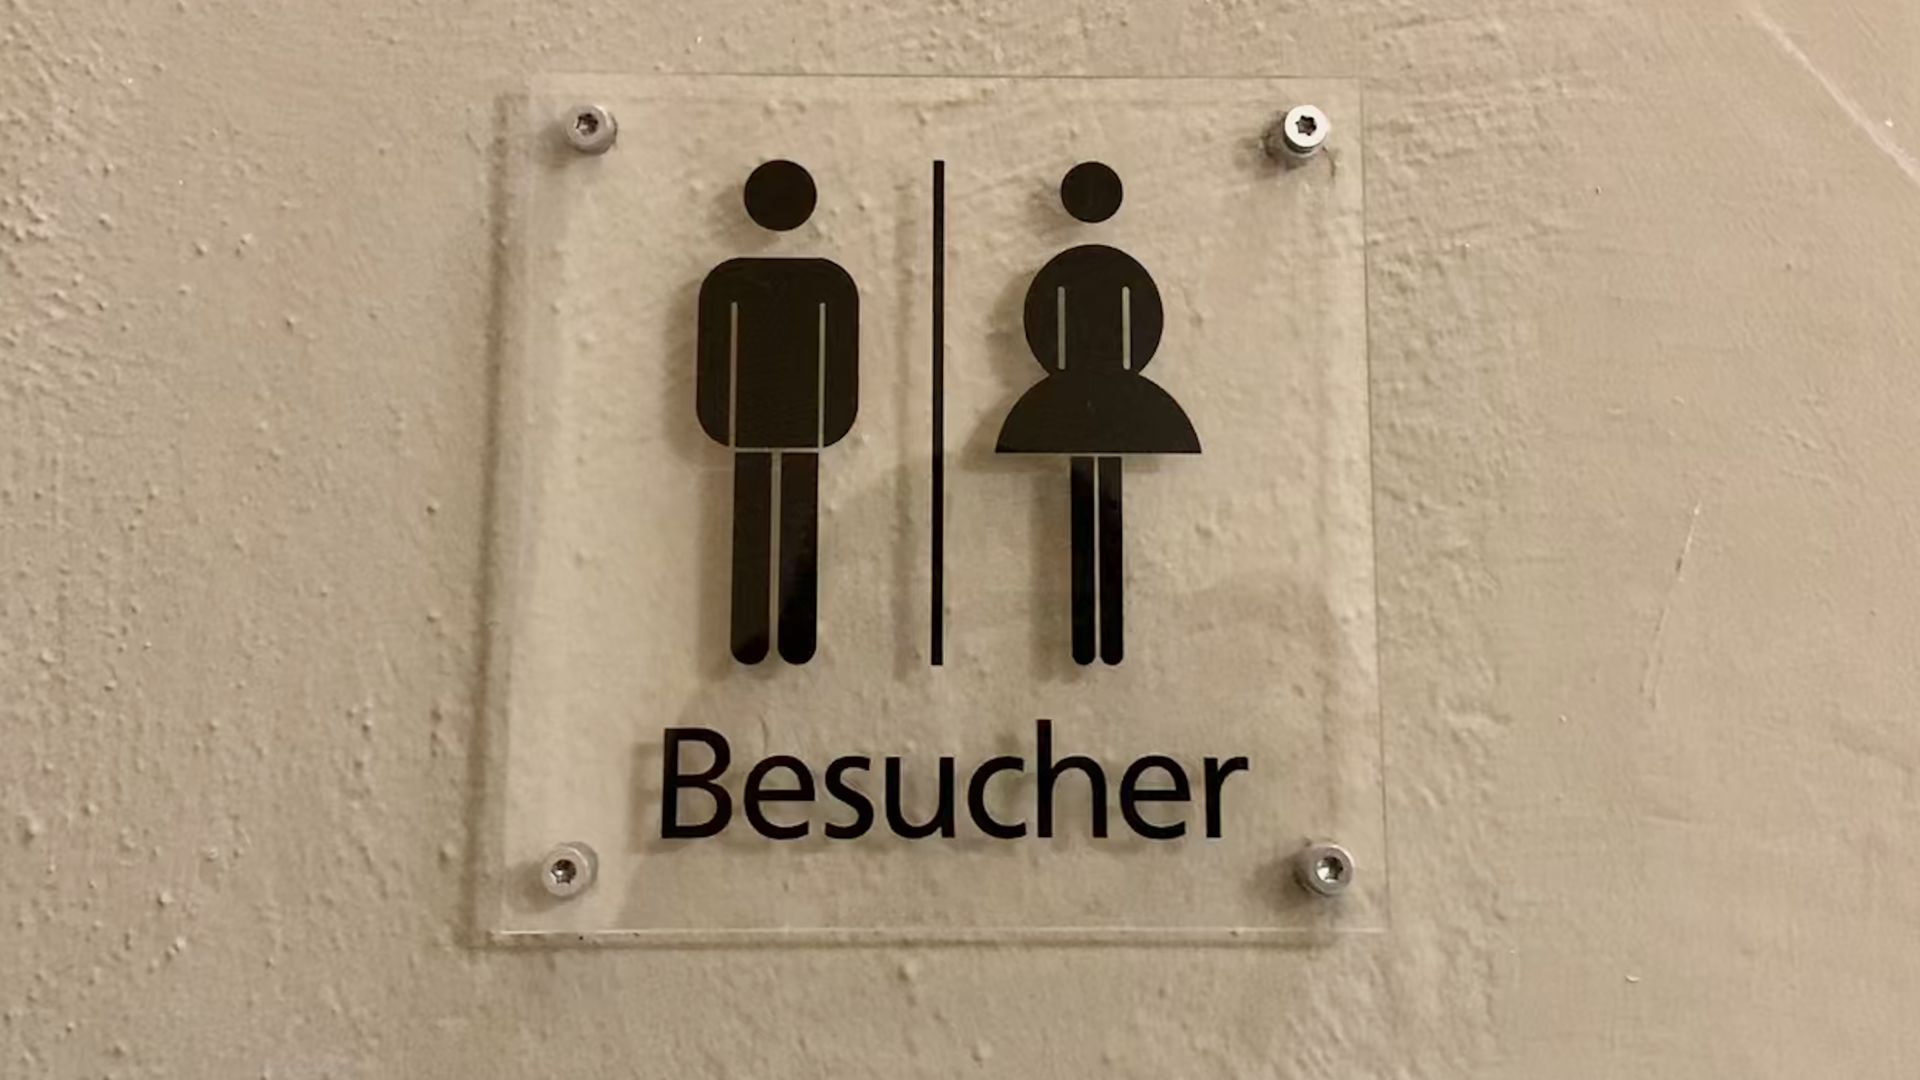 Das erste Mädchengymnasium in Deutschland hat seit 2018 offiziell eine Unisex-Toilette. Zuvor wurde diese als Besuchertoilette genutzt.